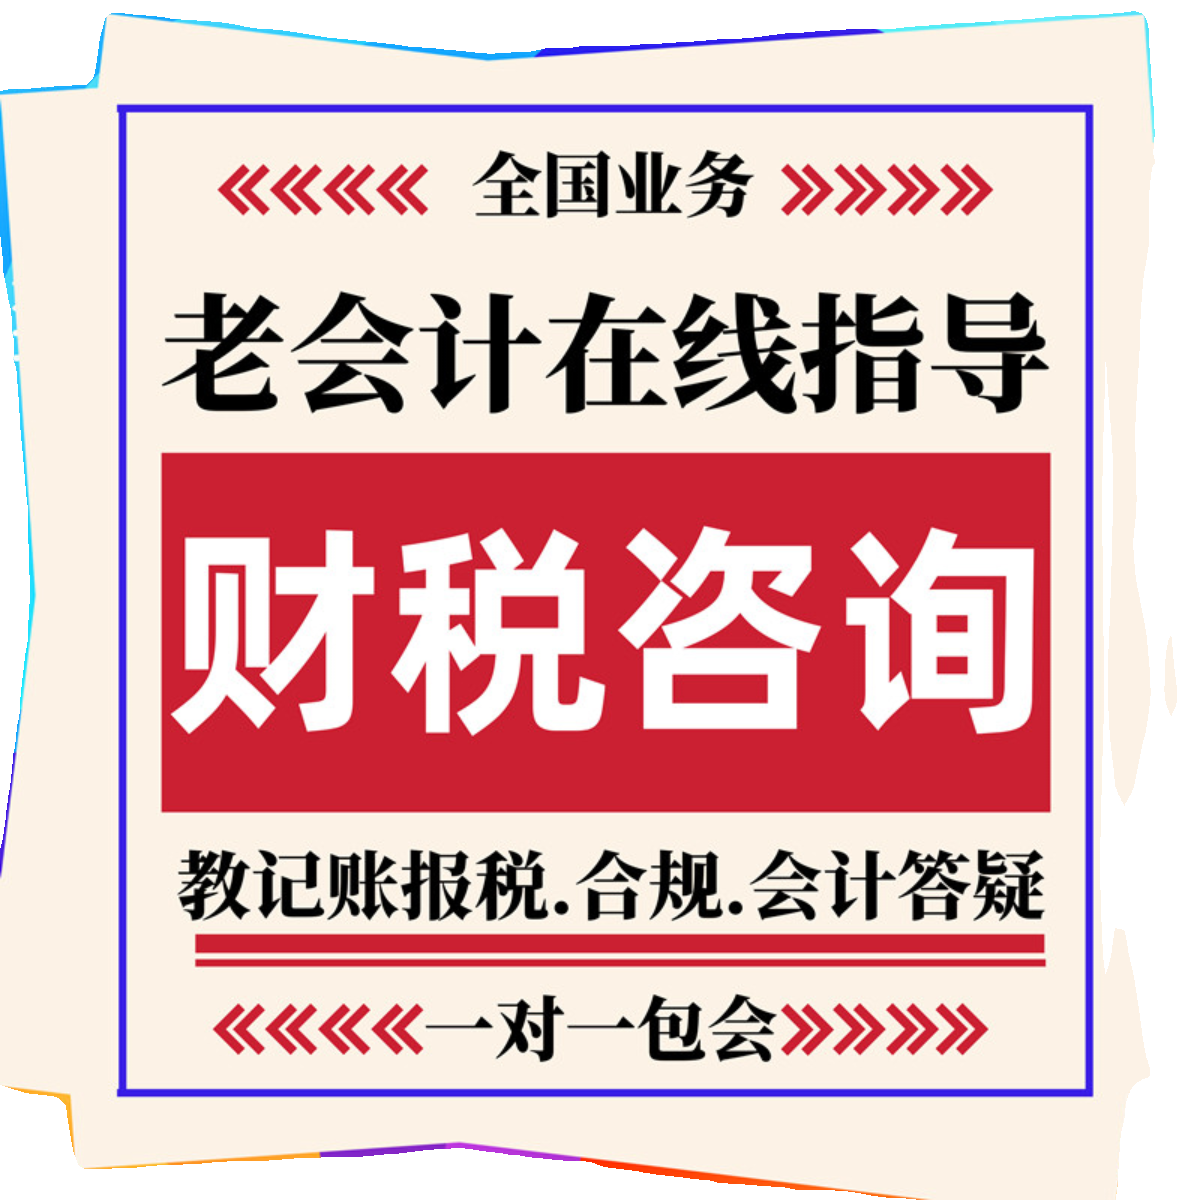 上海代理记账会计账务处理税务指导财务咨询网上报税答疑申报纳税-图3